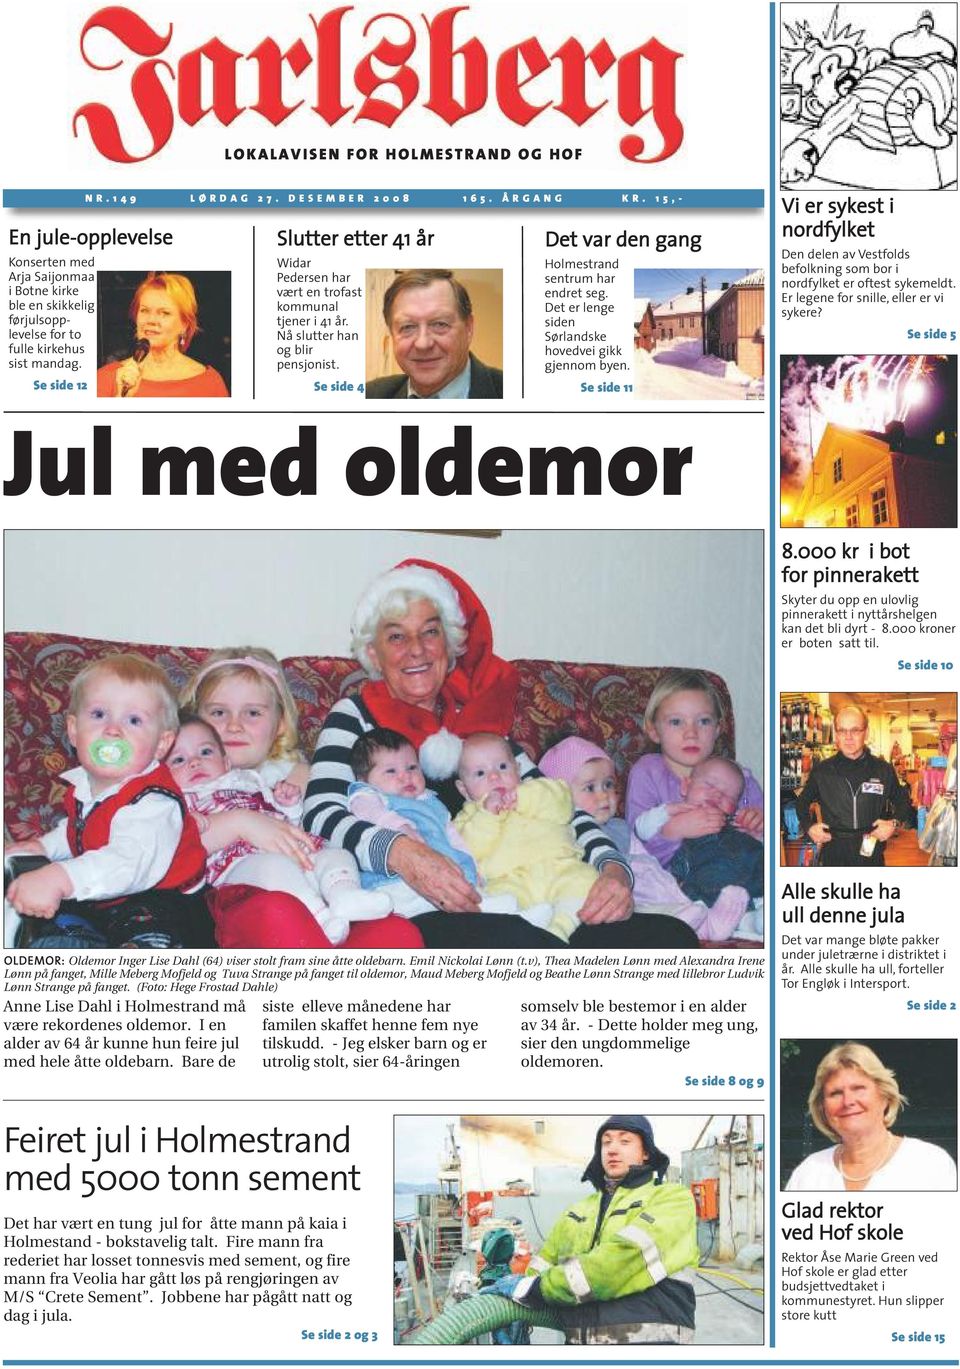 Se side 12 Slutter etter 41 år Widar Pedersen har vært en trofast kommunal tjener i 41 år. Nå slutter han og blir pensjonist. Se side 4 D e t v a r d e n g a n g Holmestrand sentrum har endret seg.